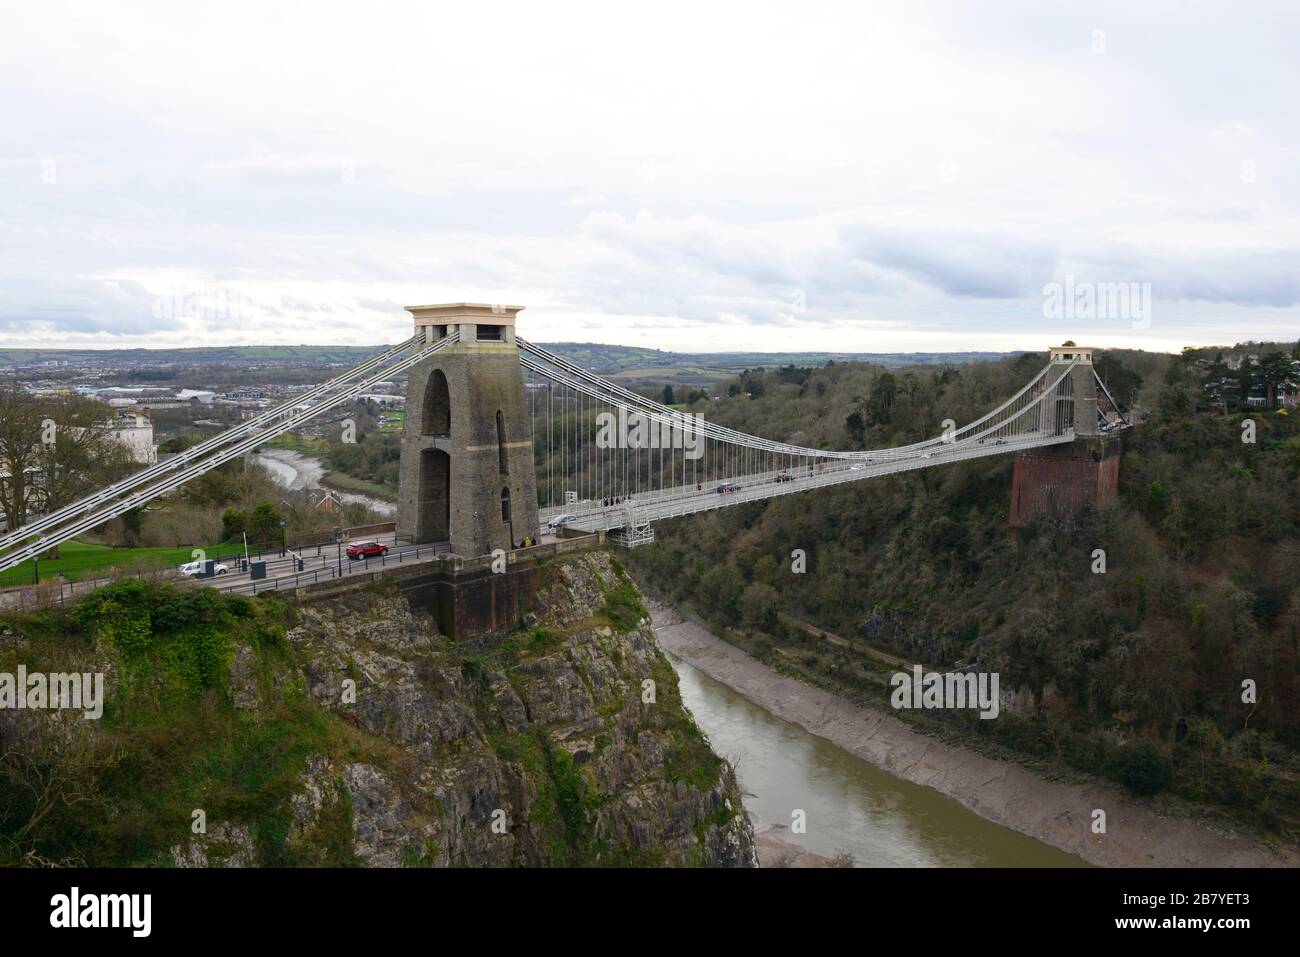 Le pont suspendu Clifton de Brunel en journée nuageux à marée basse, Clifton, Bristol, Royaume-Uni Banque D'Images